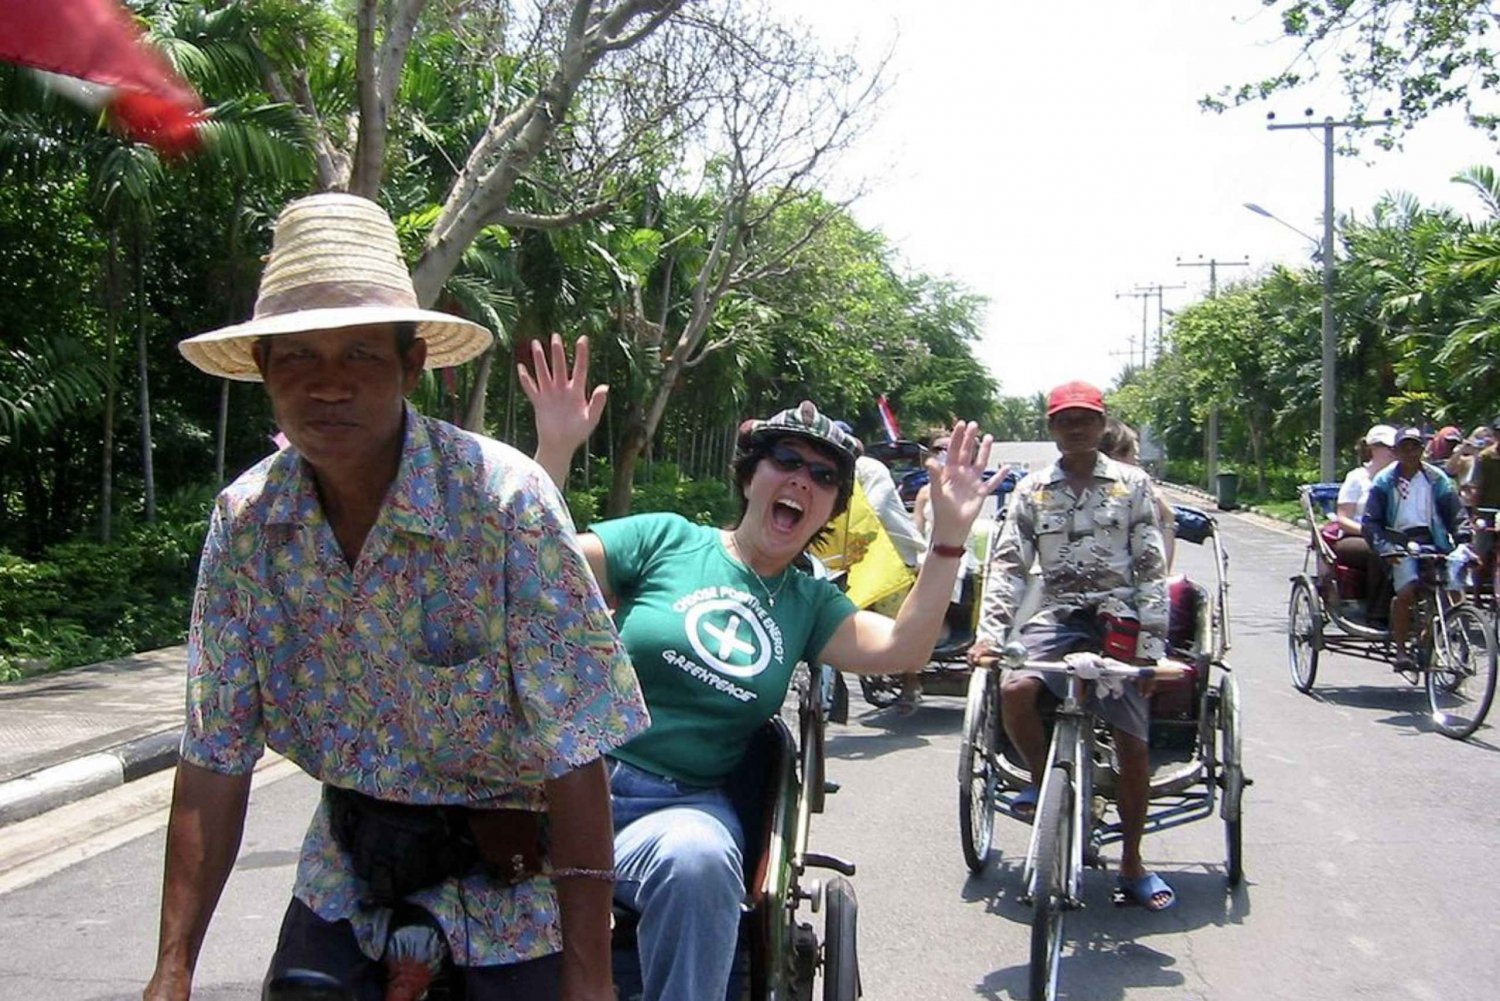 Tour nella giungla di Bangkok in Tuk-Tuk, motoscafo a coda lunga e risciò